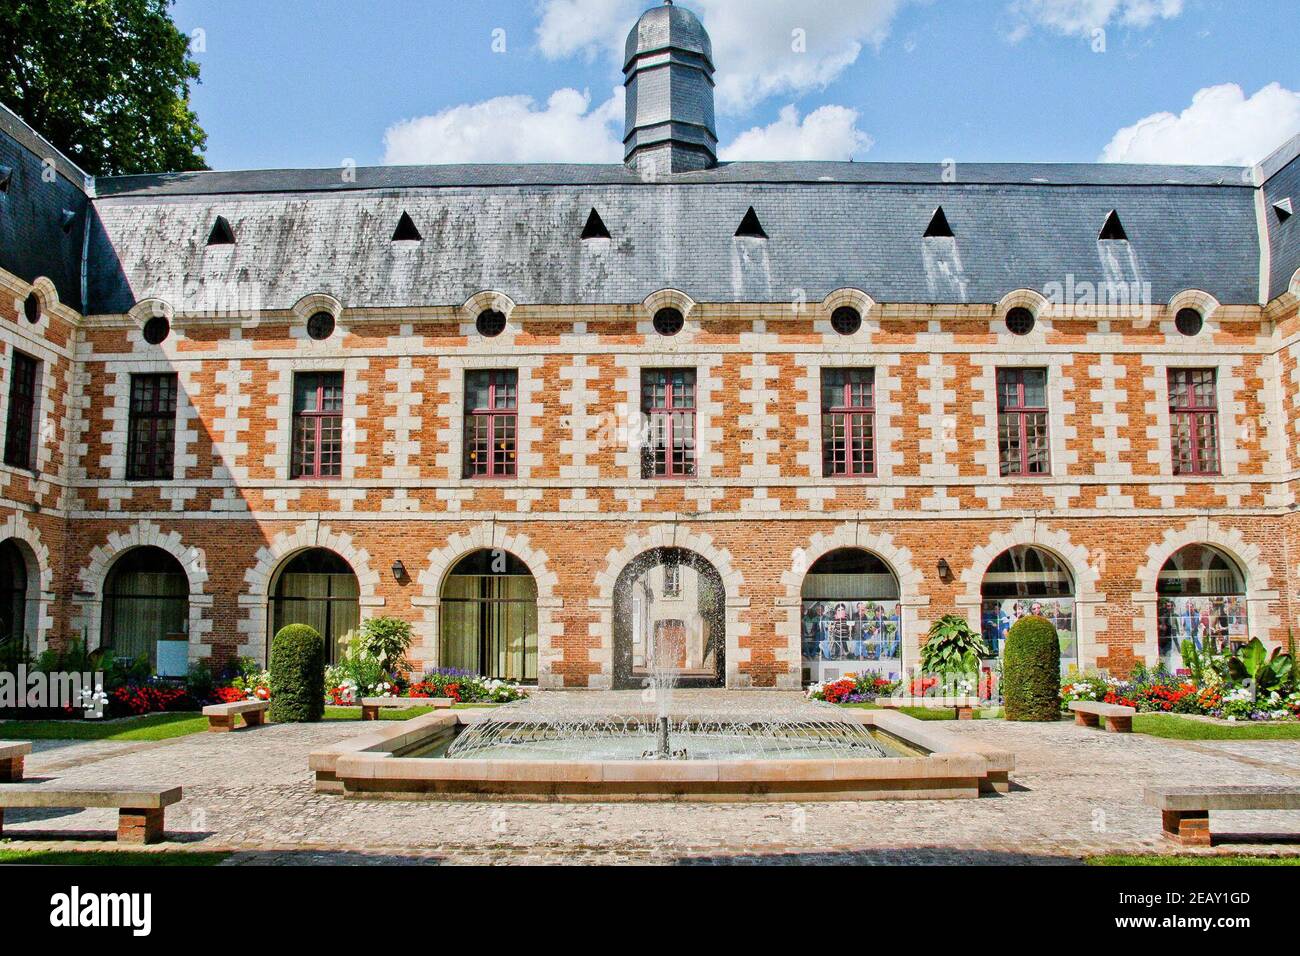 Photo du dossier datée du 4 août 2014 de l'hôtel de ville de Vendome,  France. Vendome a vendu une partie des droits de marque de son nom à Louis  Vuitton. En 2018,